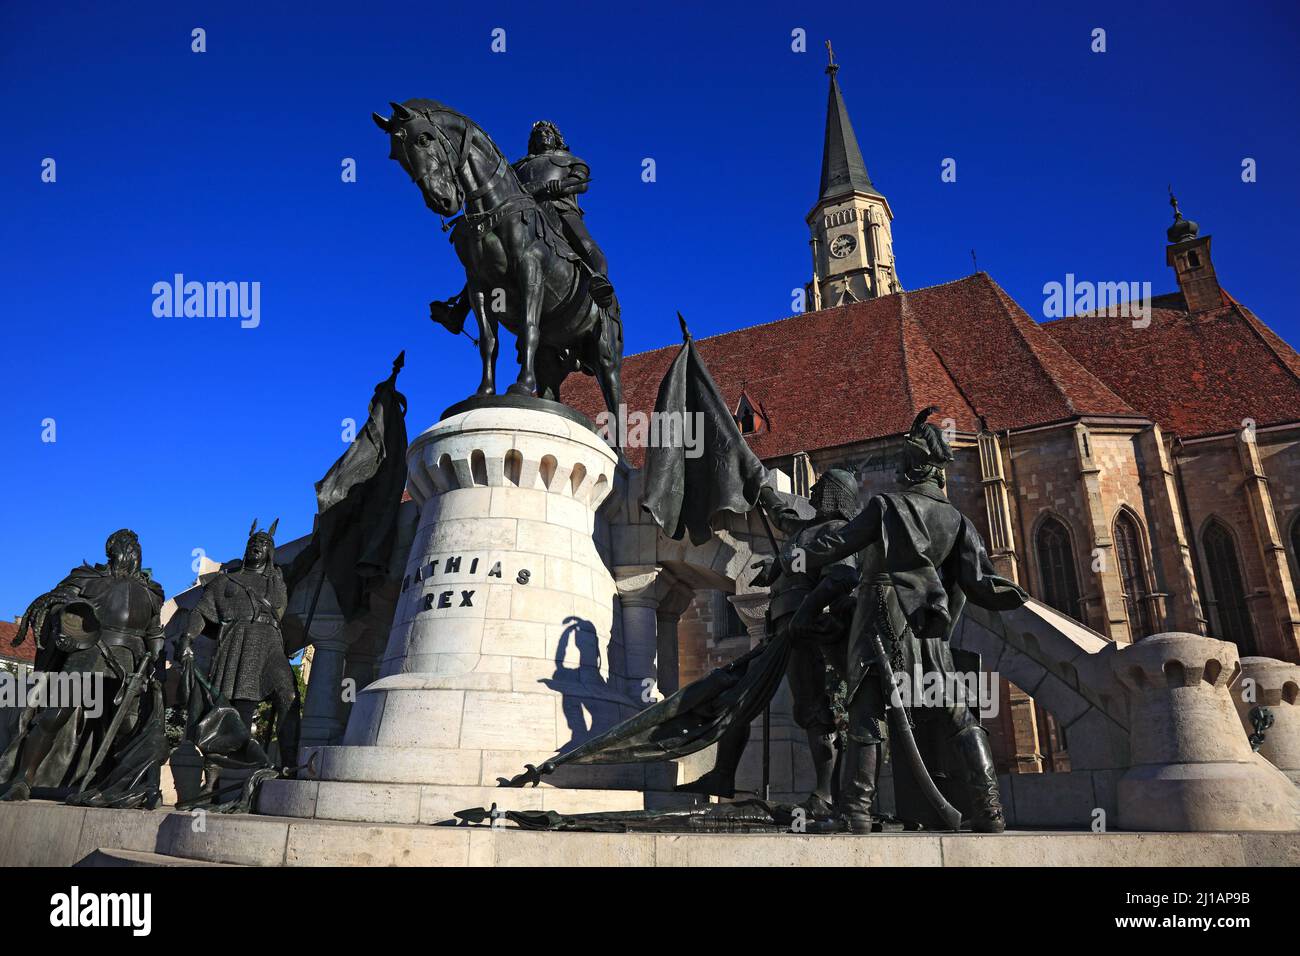 Reiterstandbild von Matthias Corvinus, Matthias Rex und Die Klausenburger Michaelskirche in Cluj-Napoca, deutsch Klausenburg, ist das bedeutendste Bei Stock Photo